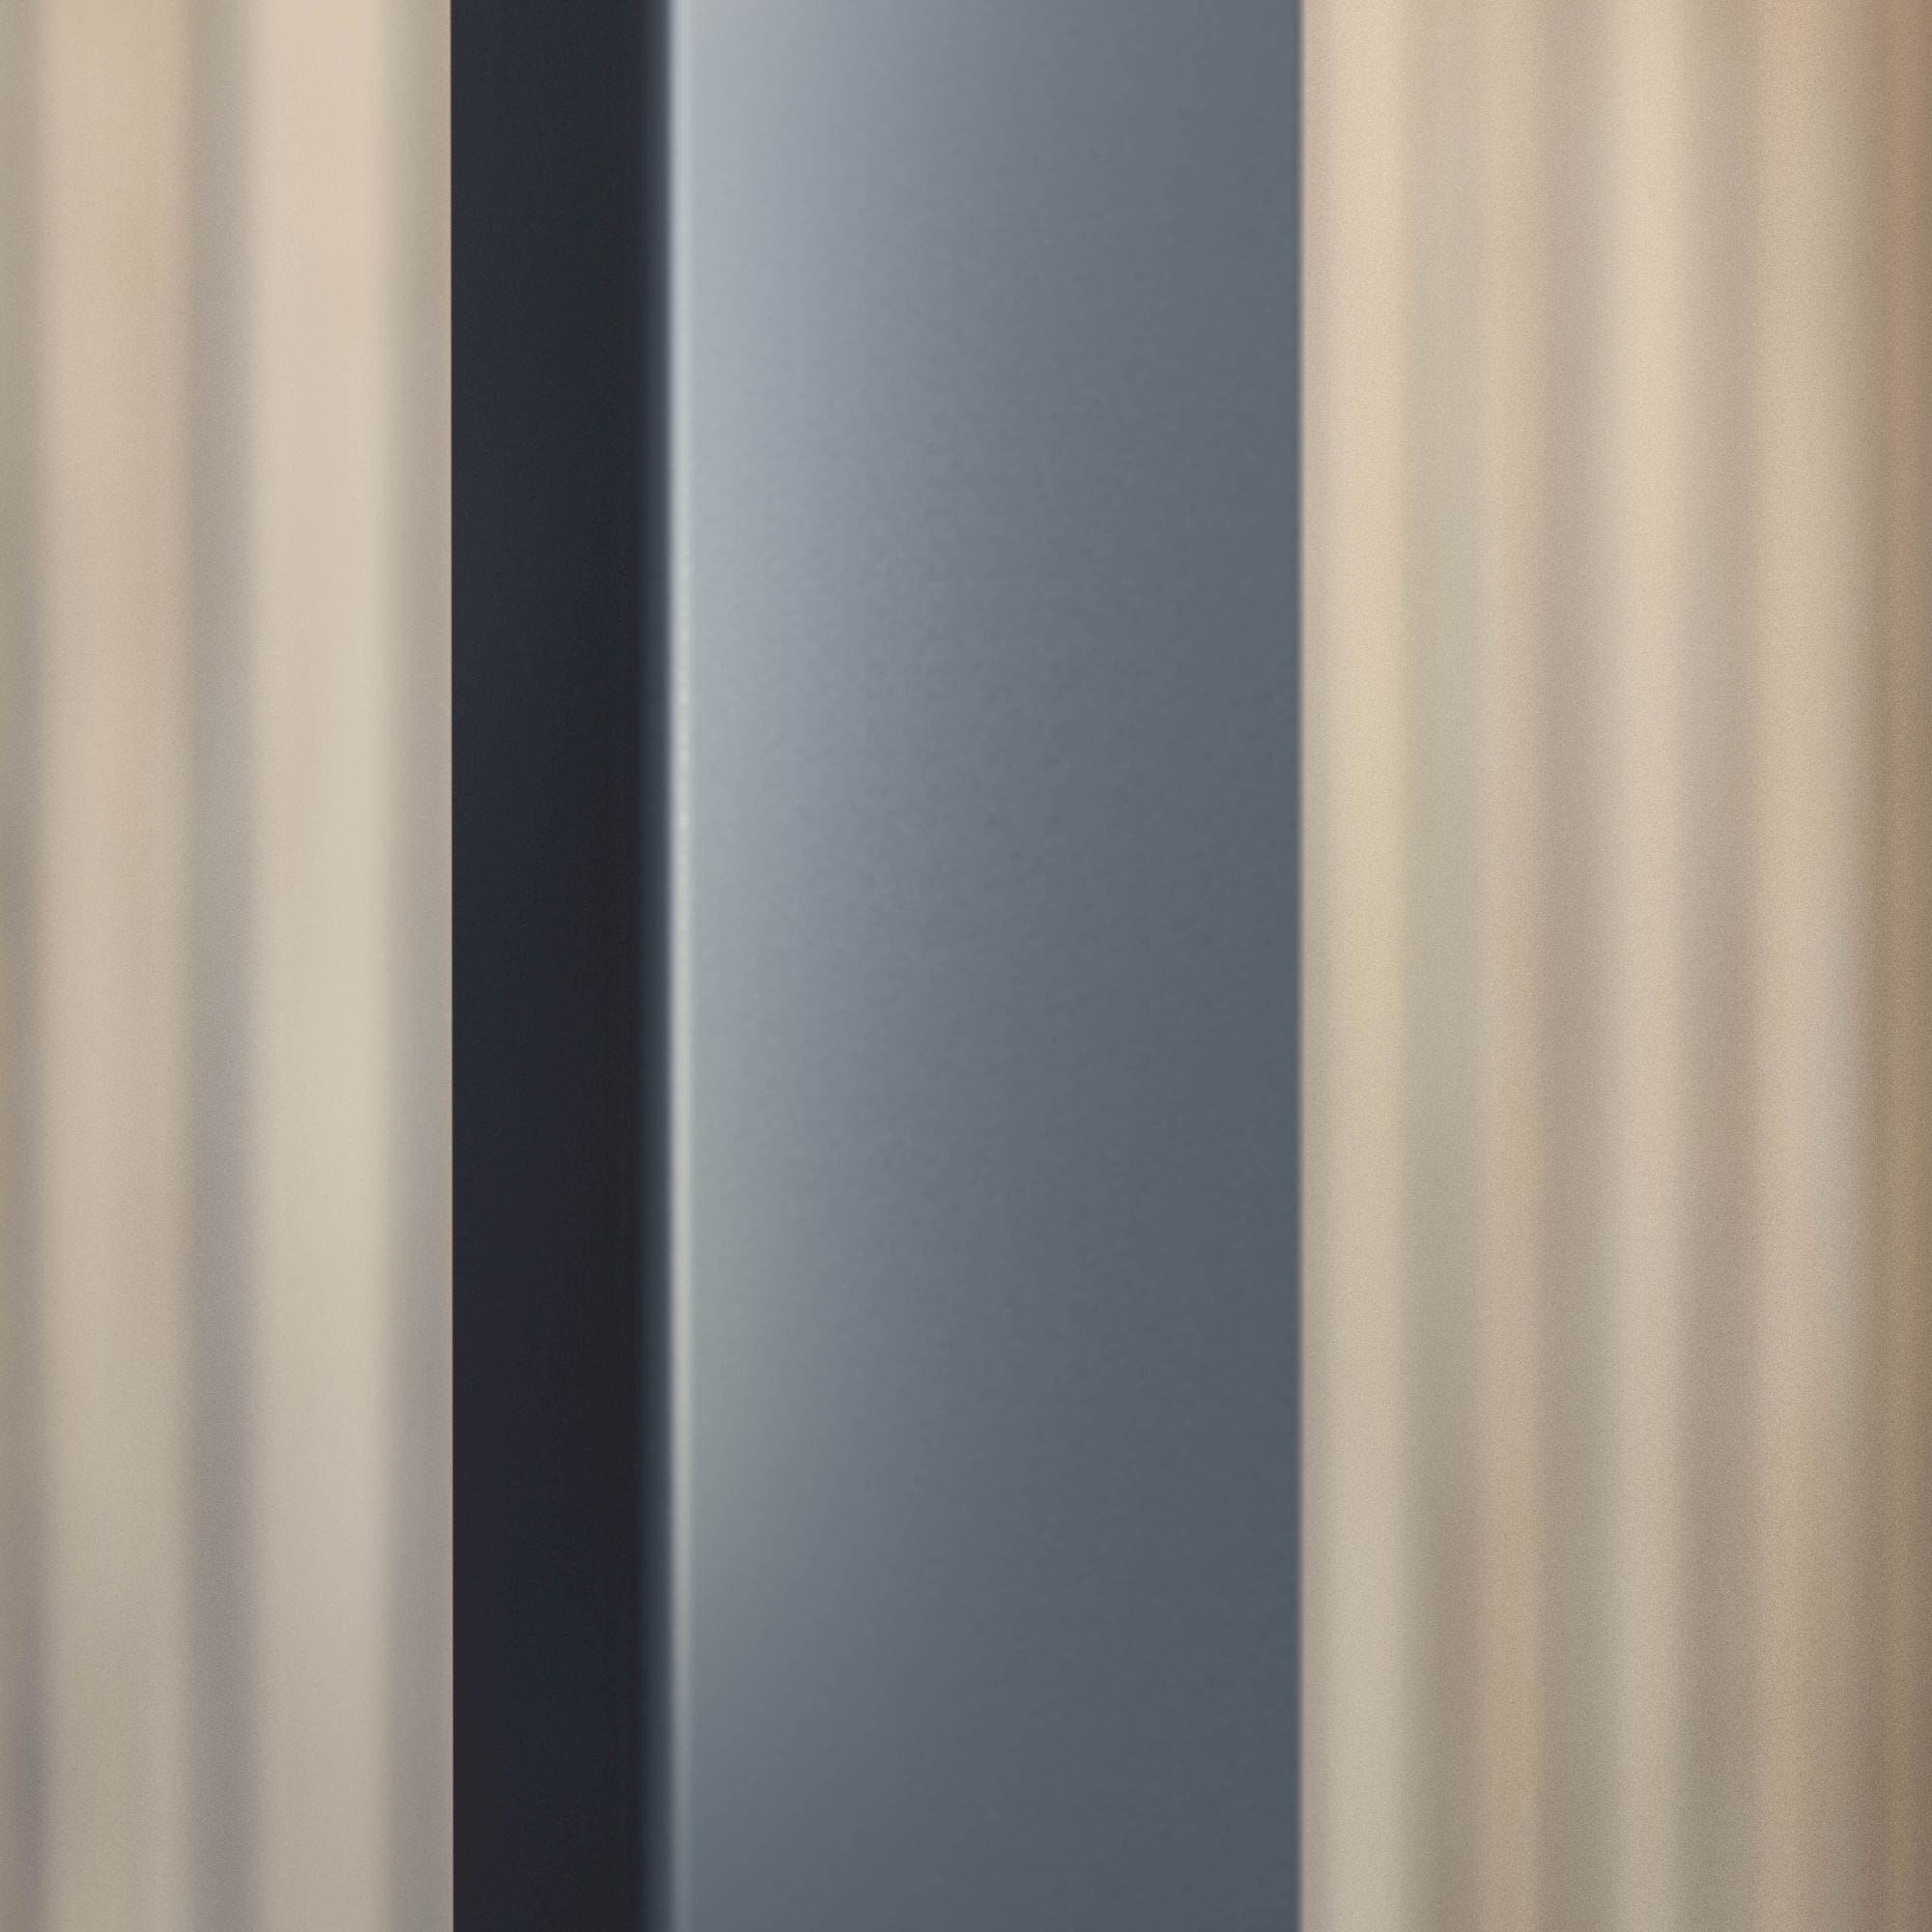 Schulte porte de douche pivotante en niche, 100 x 200 cm, décalage l´ouverte de la porte 20 cm, verre 6 mm transparent autolevant, profilé noir 3